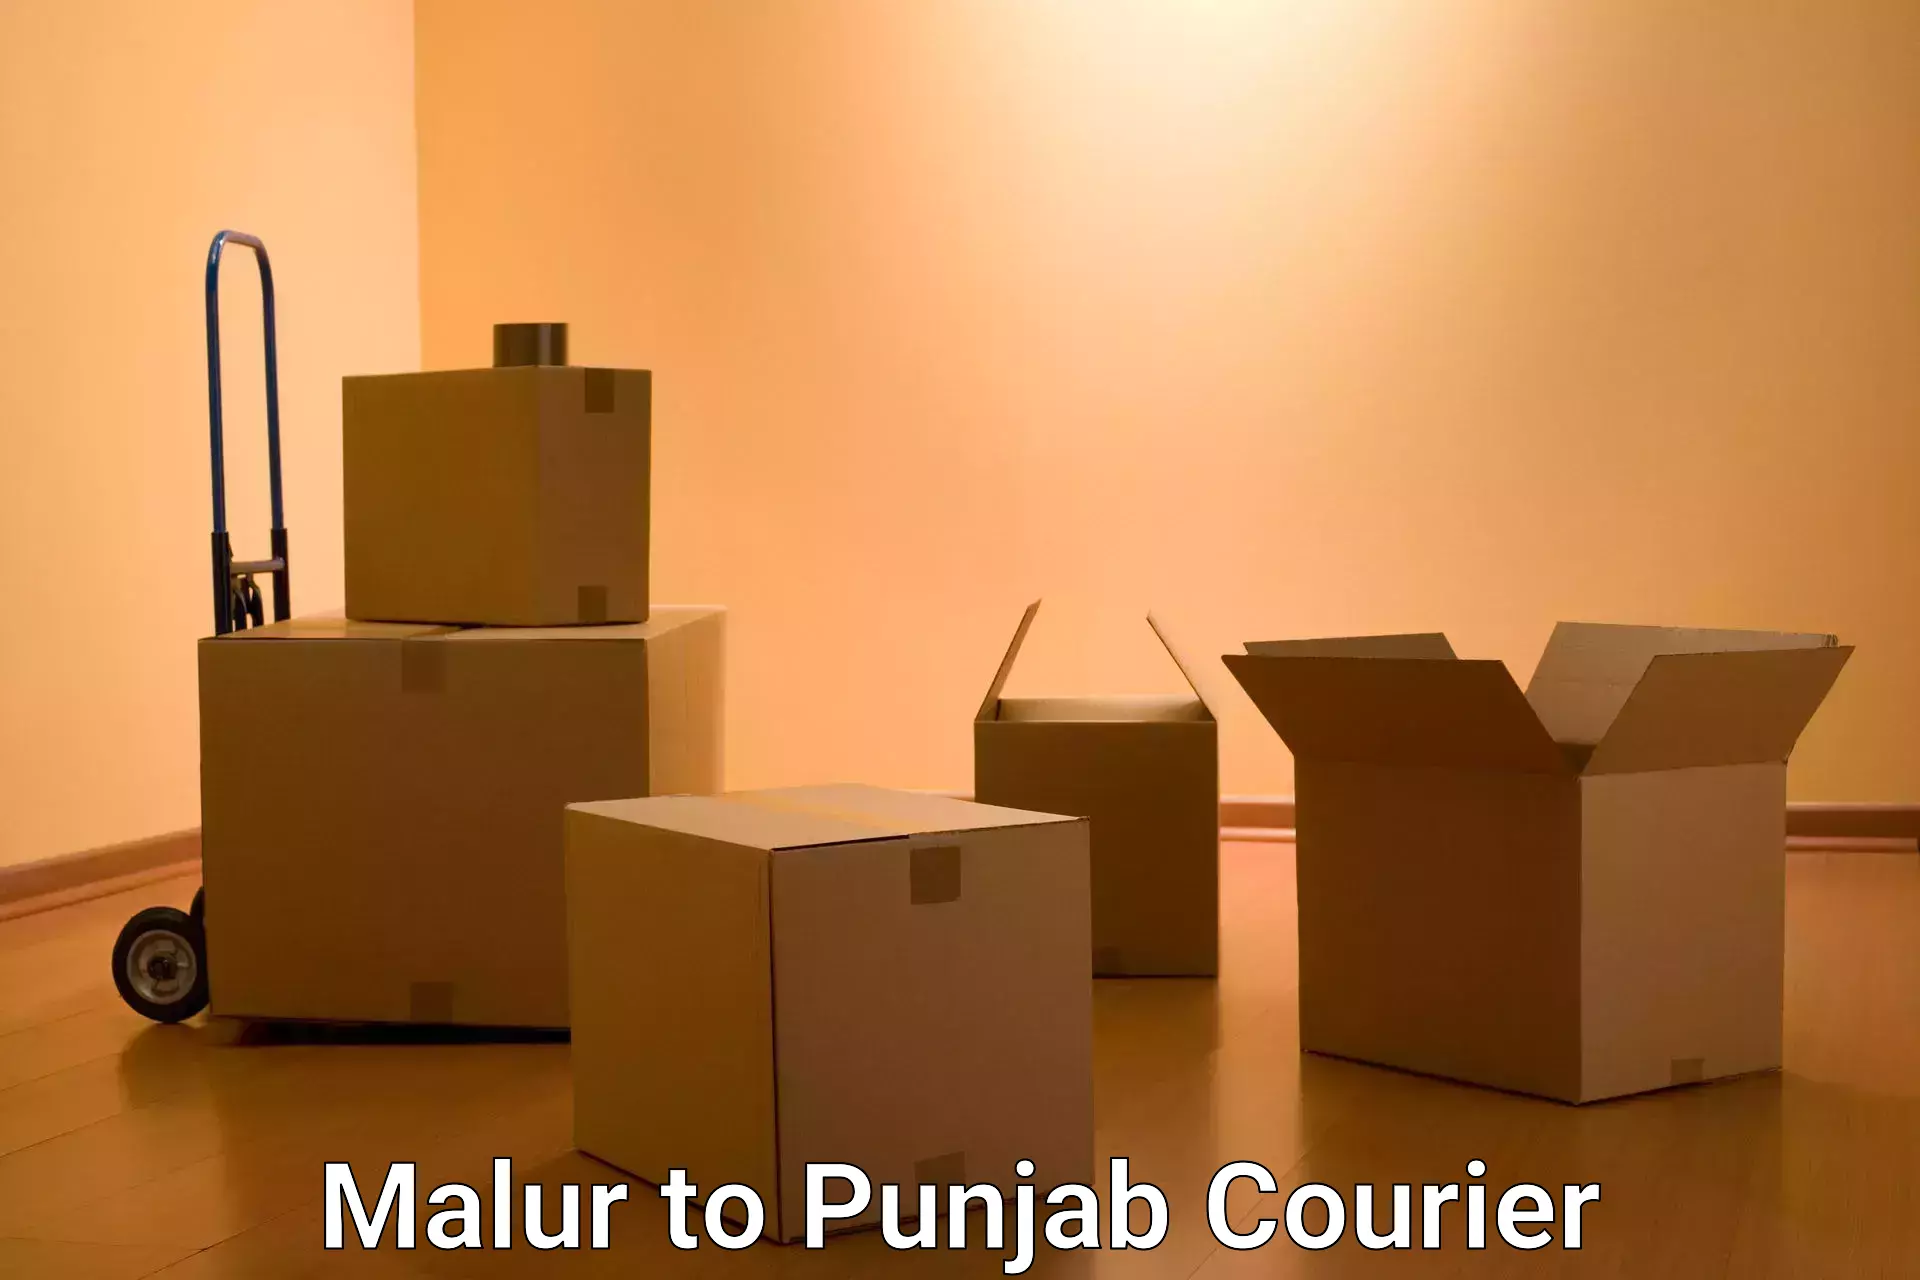 Courier service comparison Malur to Raikot